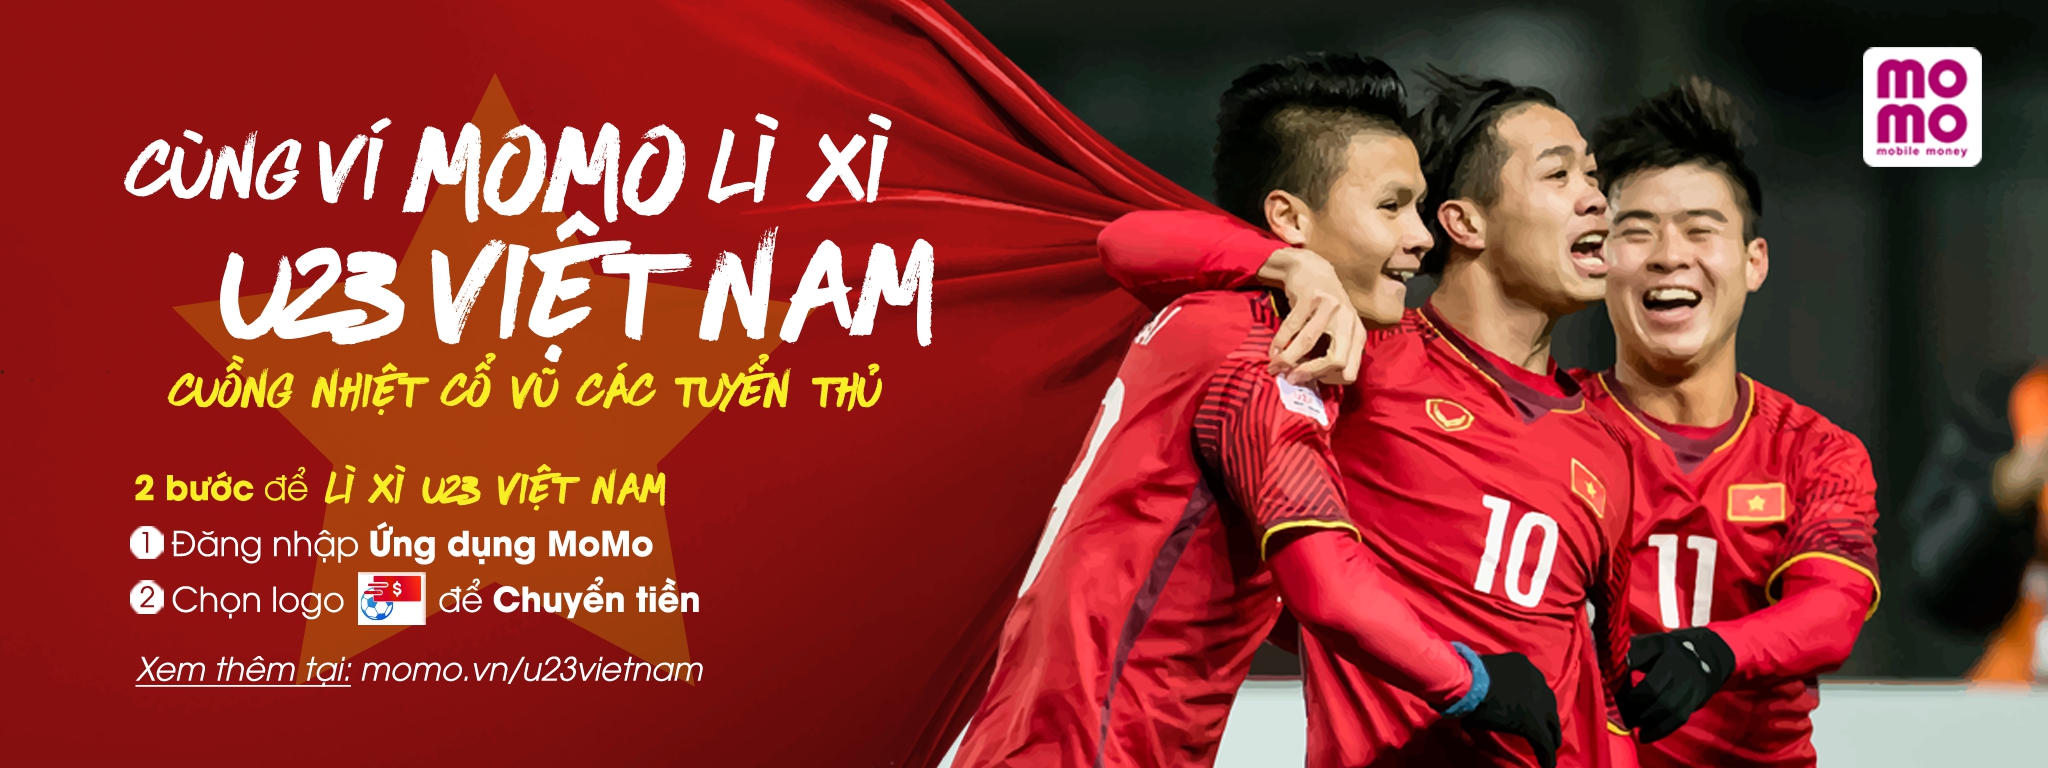 [QC] Trước thềm chung kết AFC U23 CUP: Cùng MOMO lì xì U23 Việt Nam, cuồng nhiệt cổ vũ các tuyển thủ